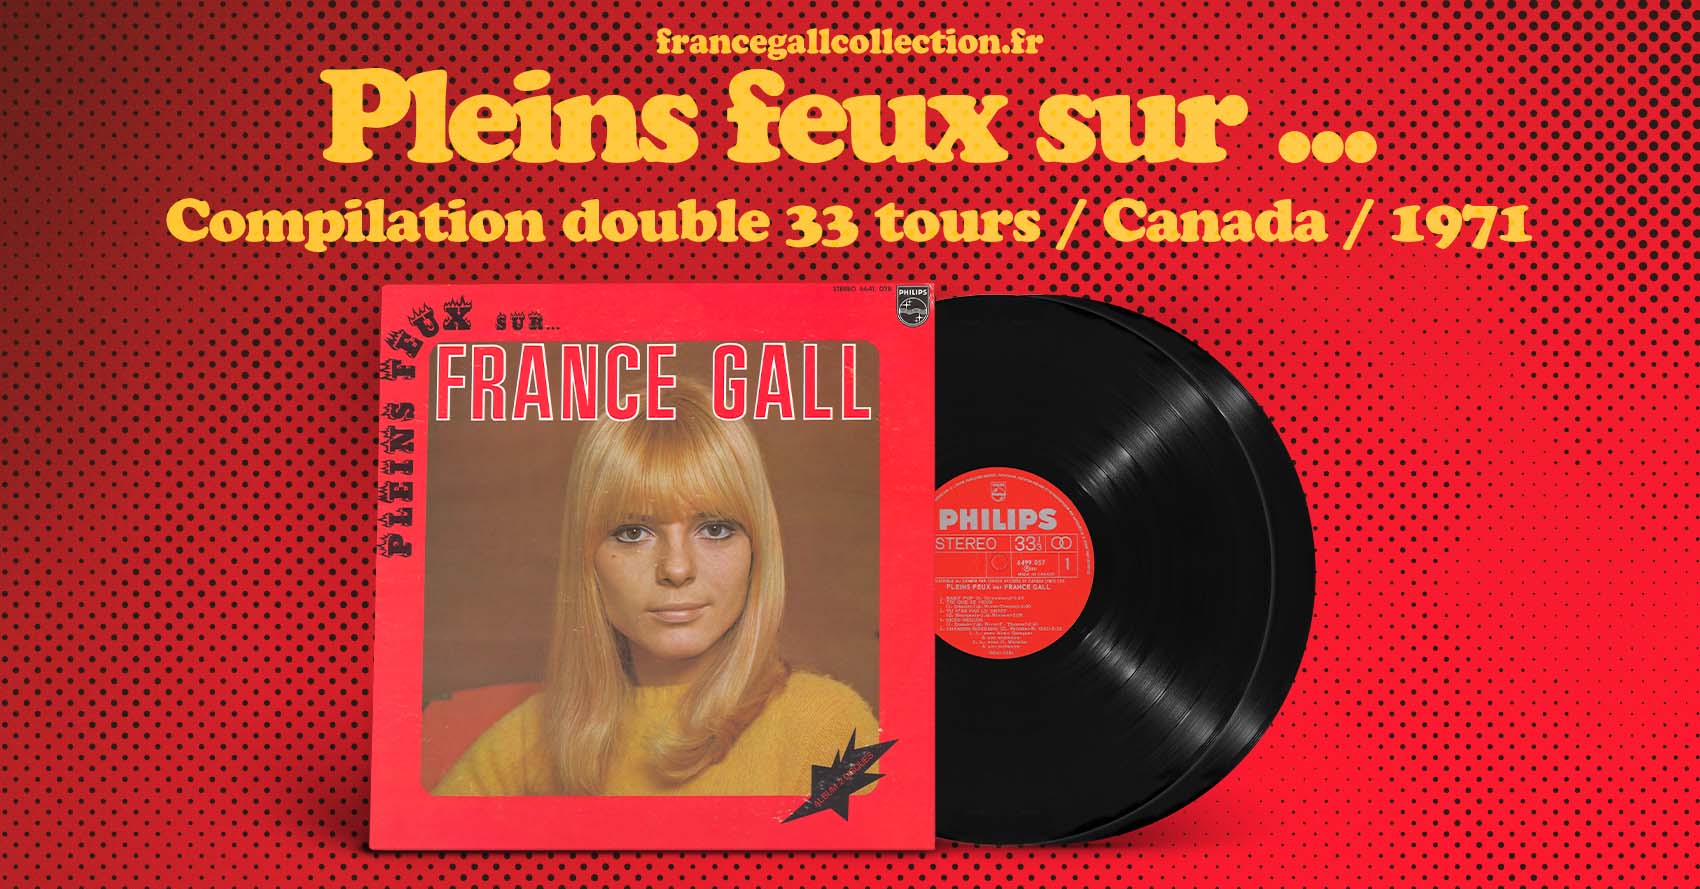 Compilation au format double 33 tours, provenant du Canada, contenant 20 titres de France Gall. Sur cette compilation, on retrouve 5 titres composés par Serge Gainsbourg.